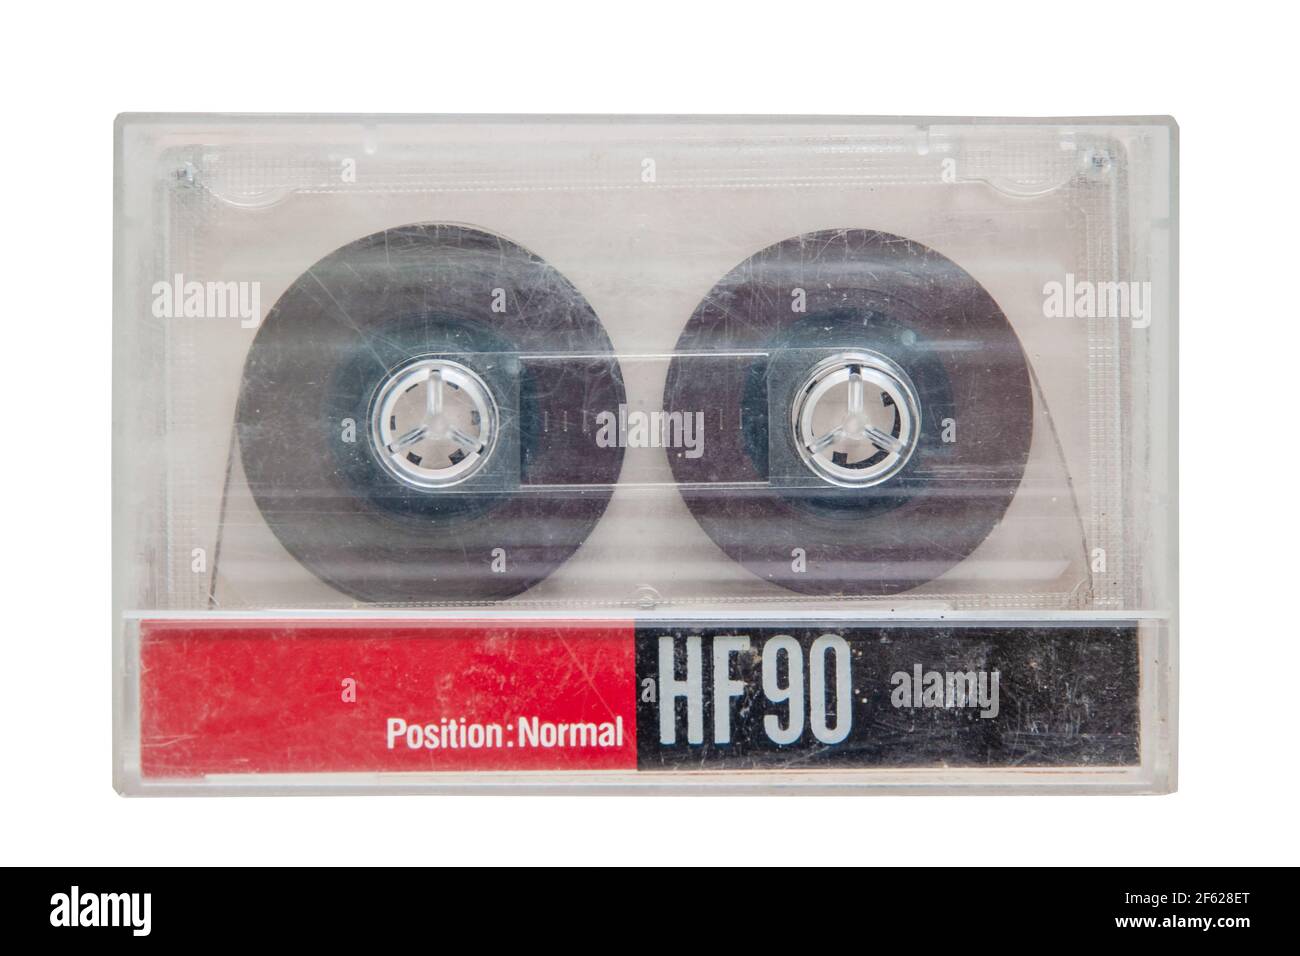 une petite boîte la cassette année 70/80 - NATHYTRACTION